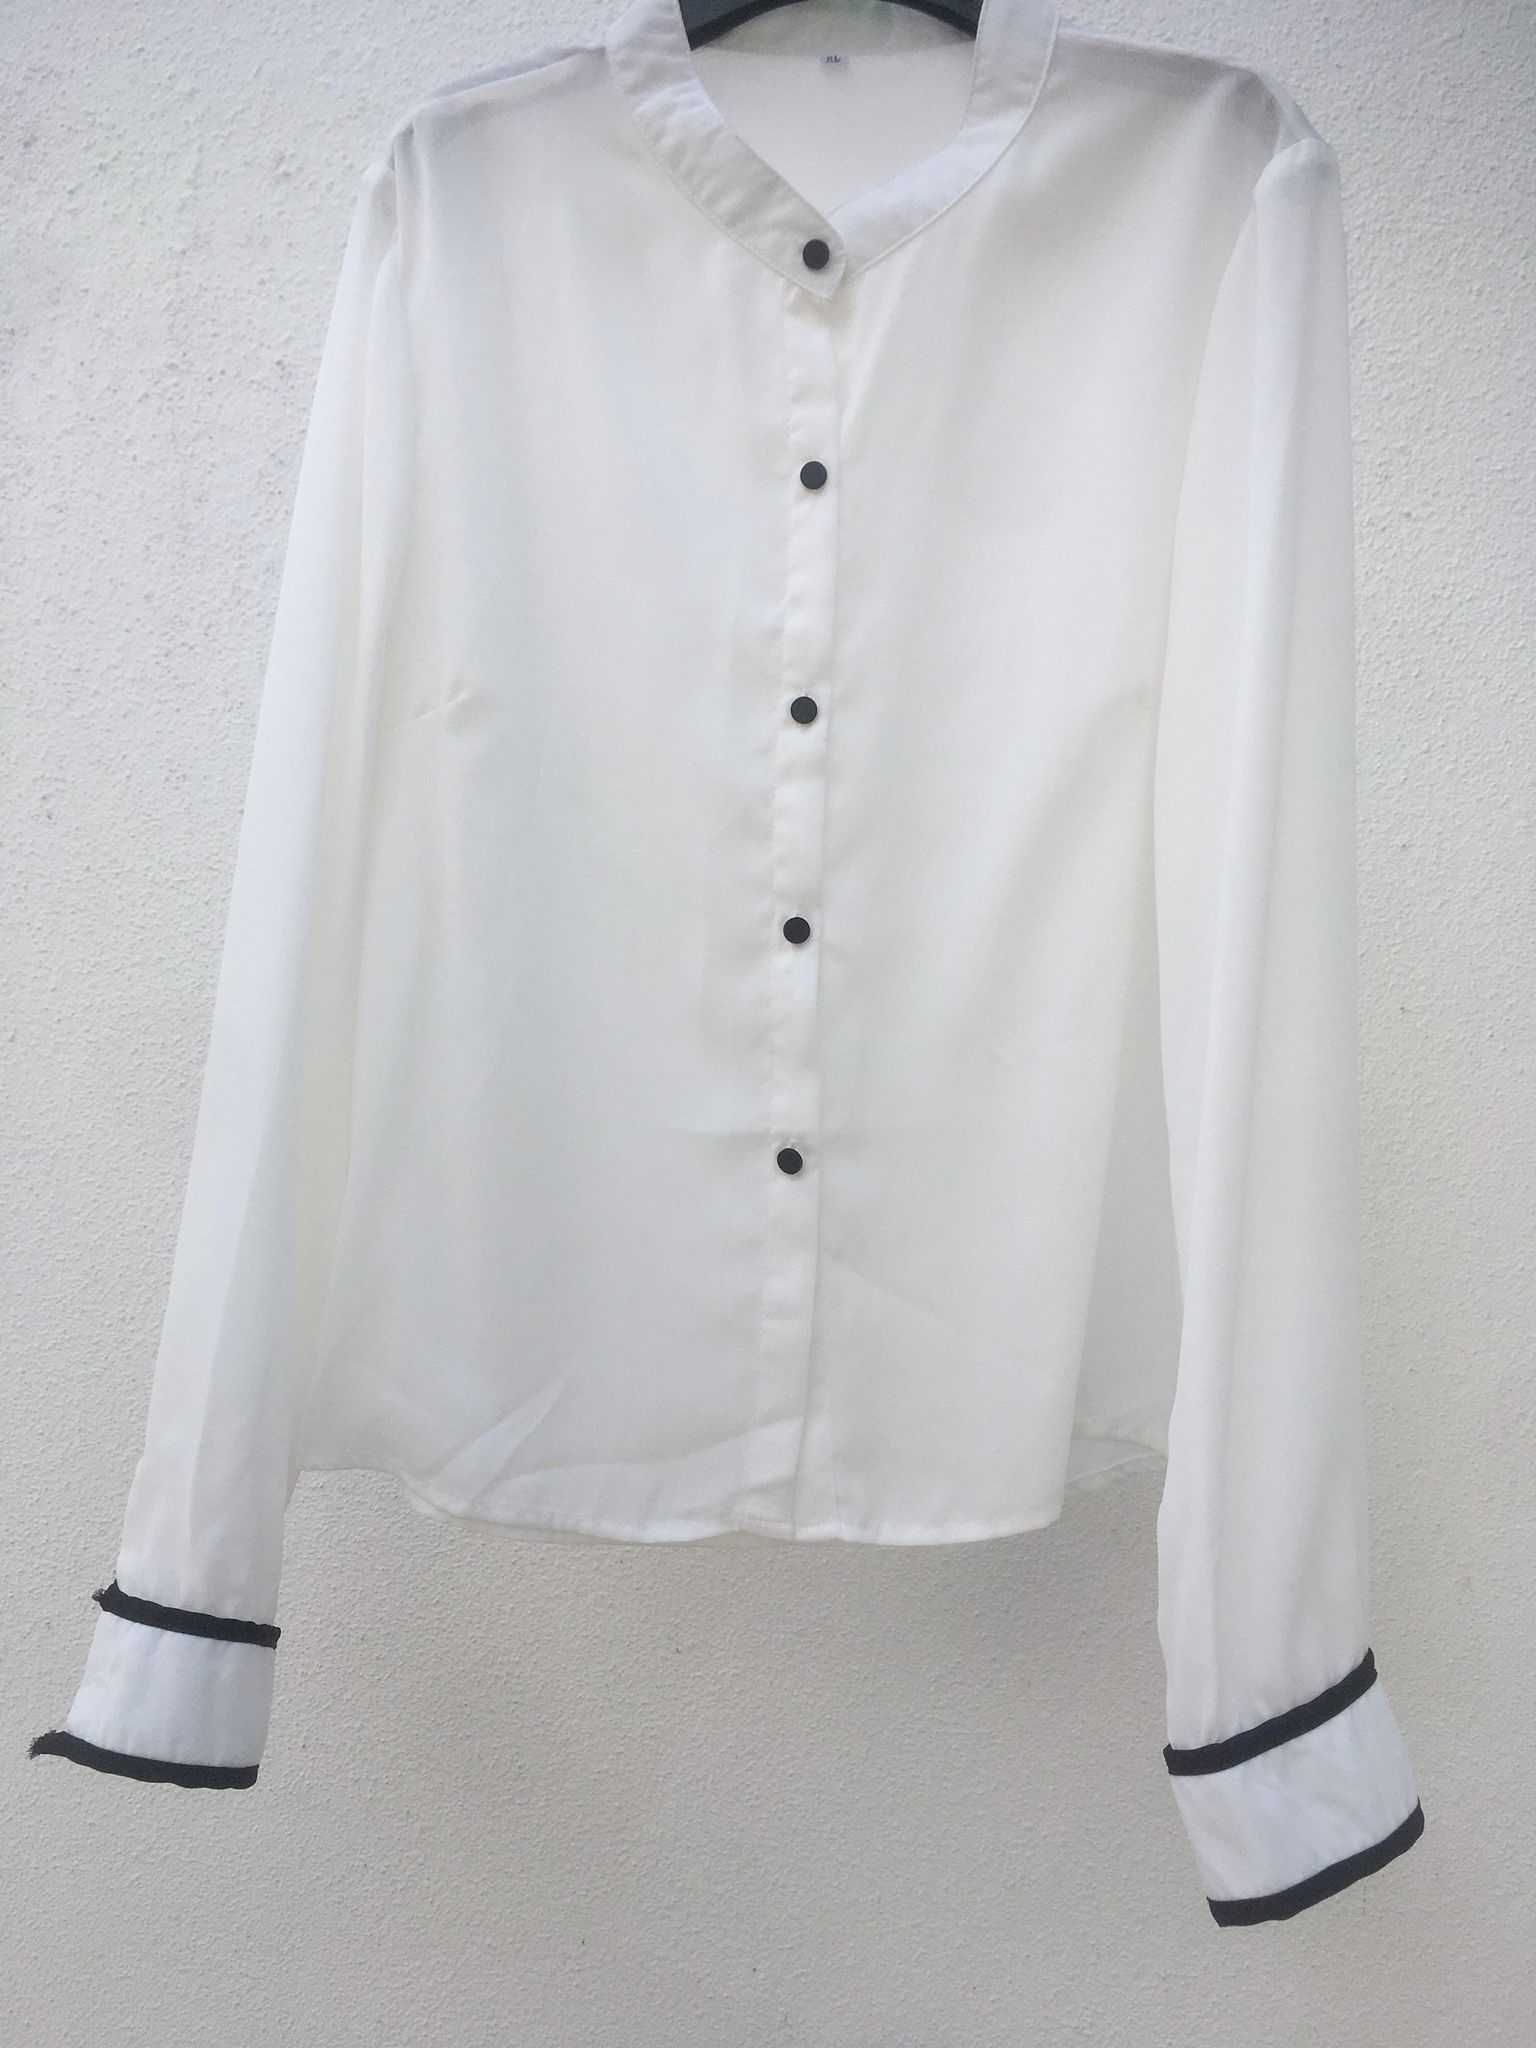 Camisa Branca com Bordas Pretas